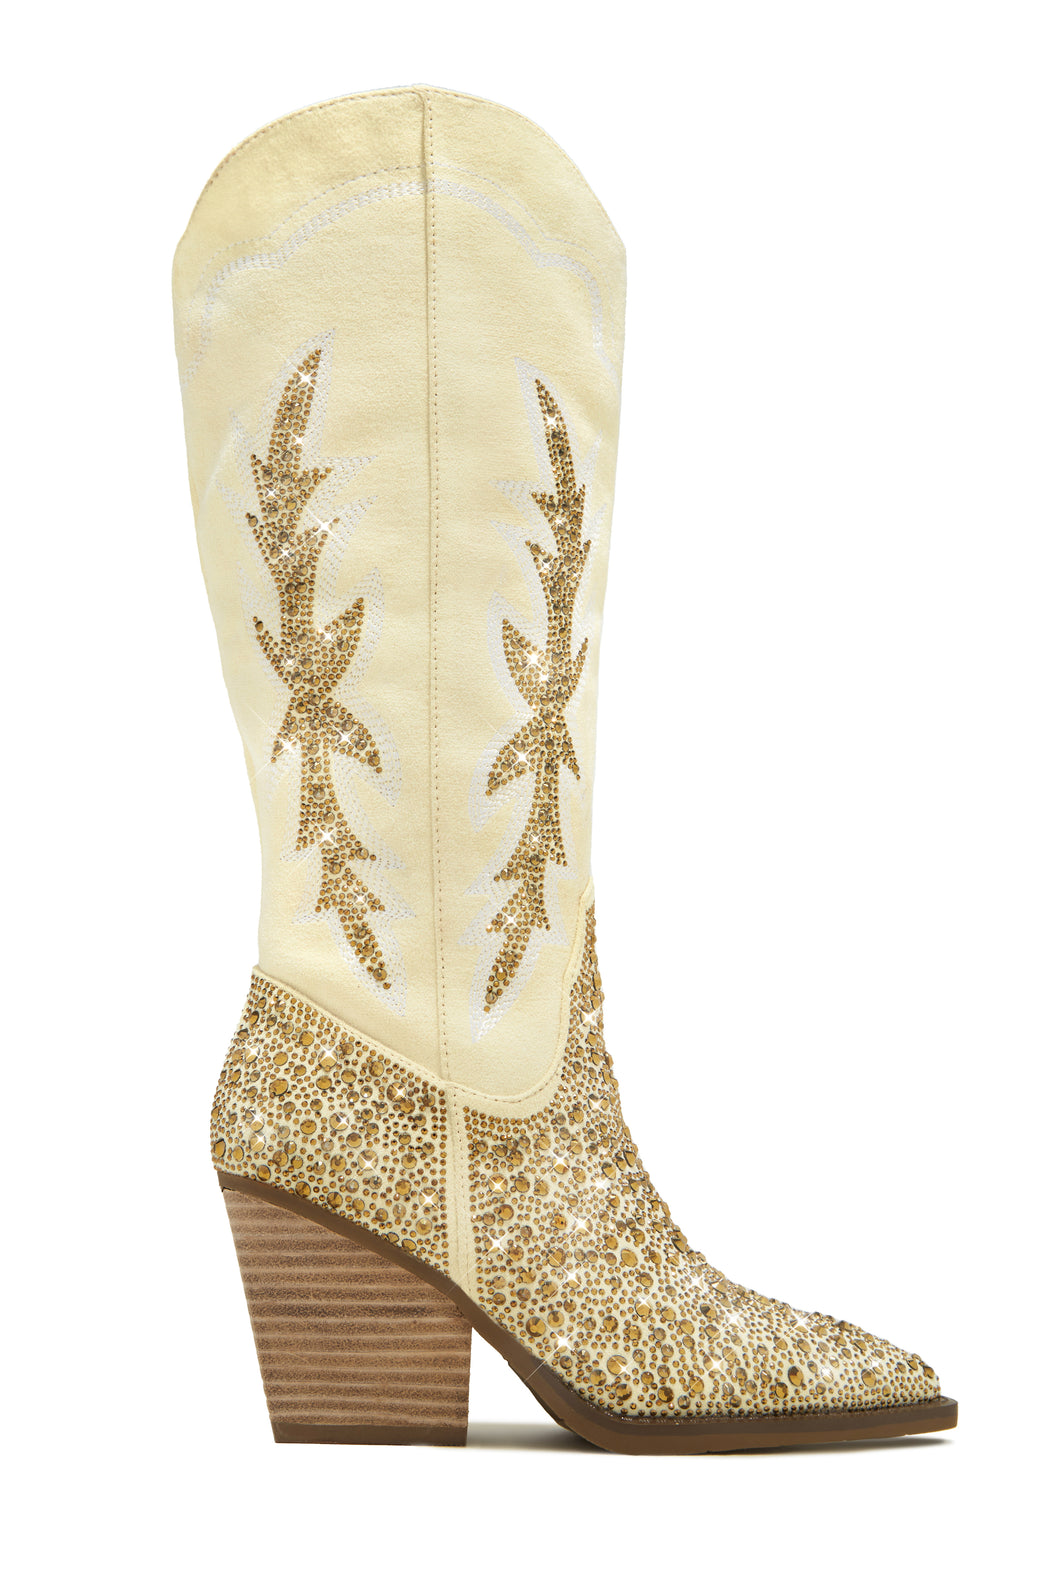 Ivory Rhinestone Embellished Boots